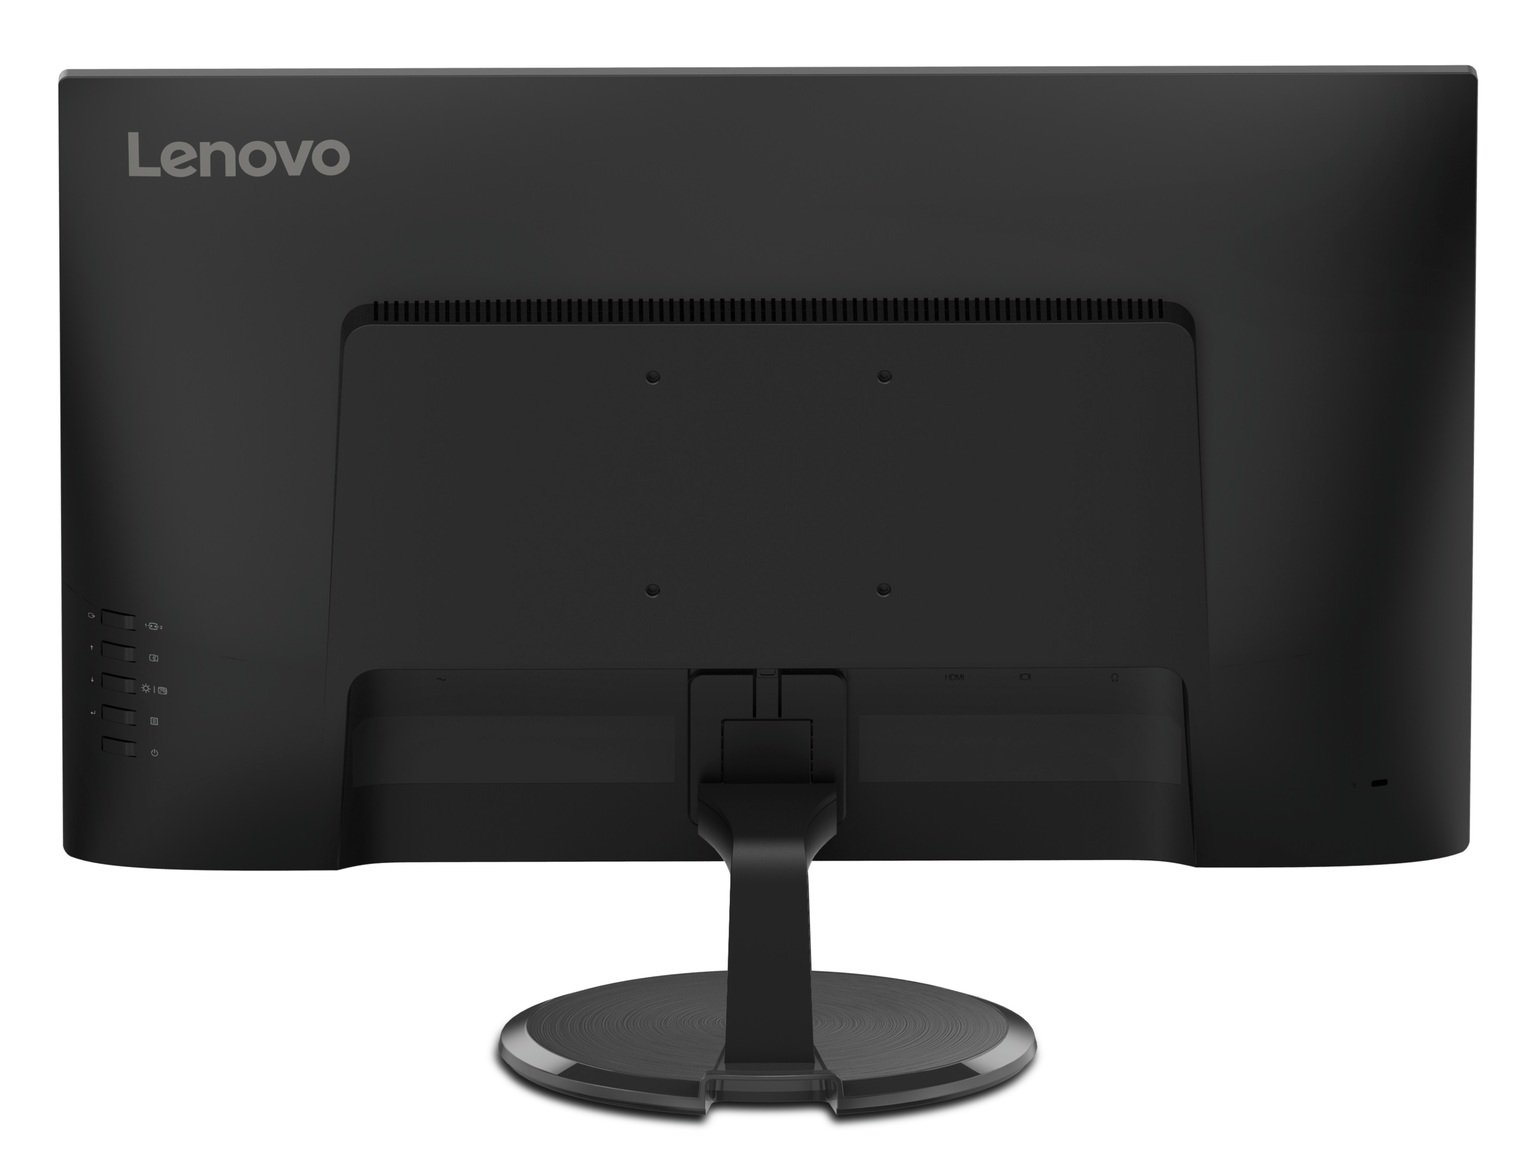 Lenovo C27-20 27in 75Hz WLED Monitor Review